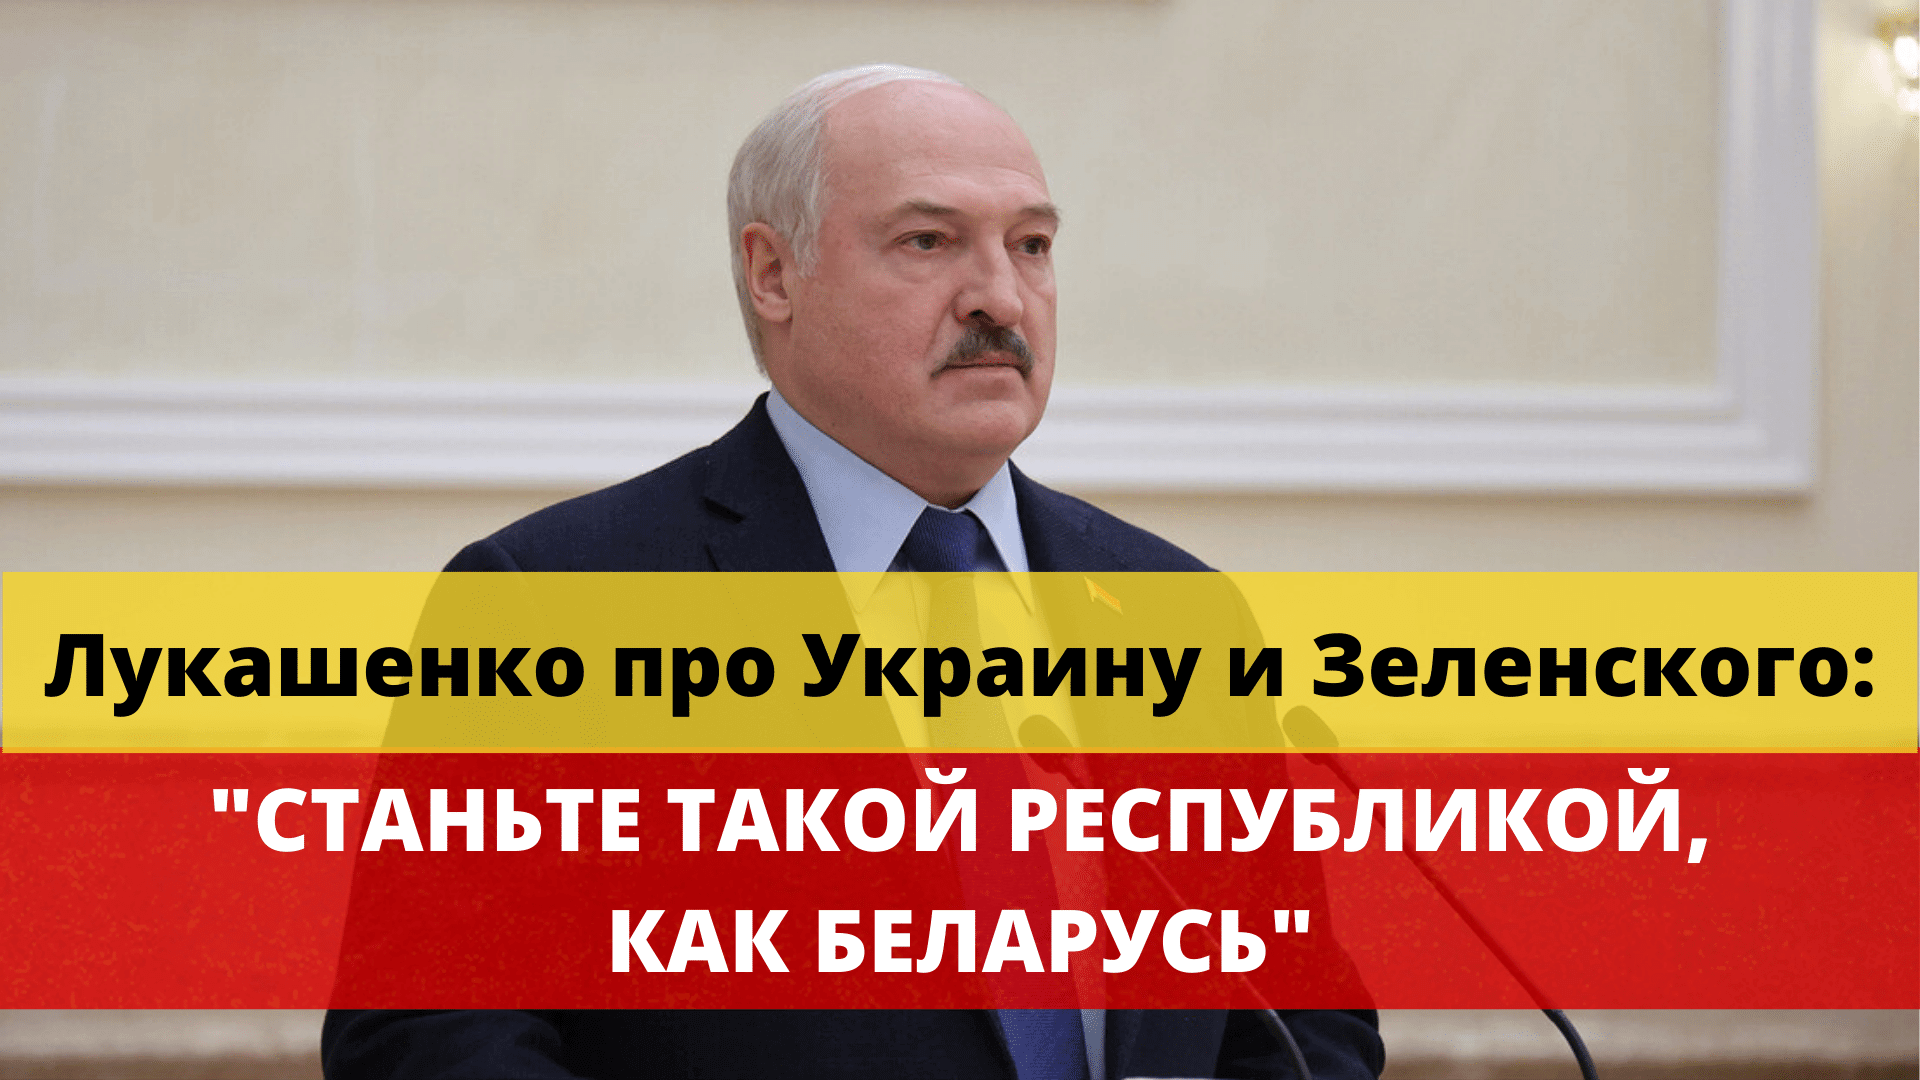 Лукашенко про Украину и Зеленского: "Станьте такой республикой как Беларусь"